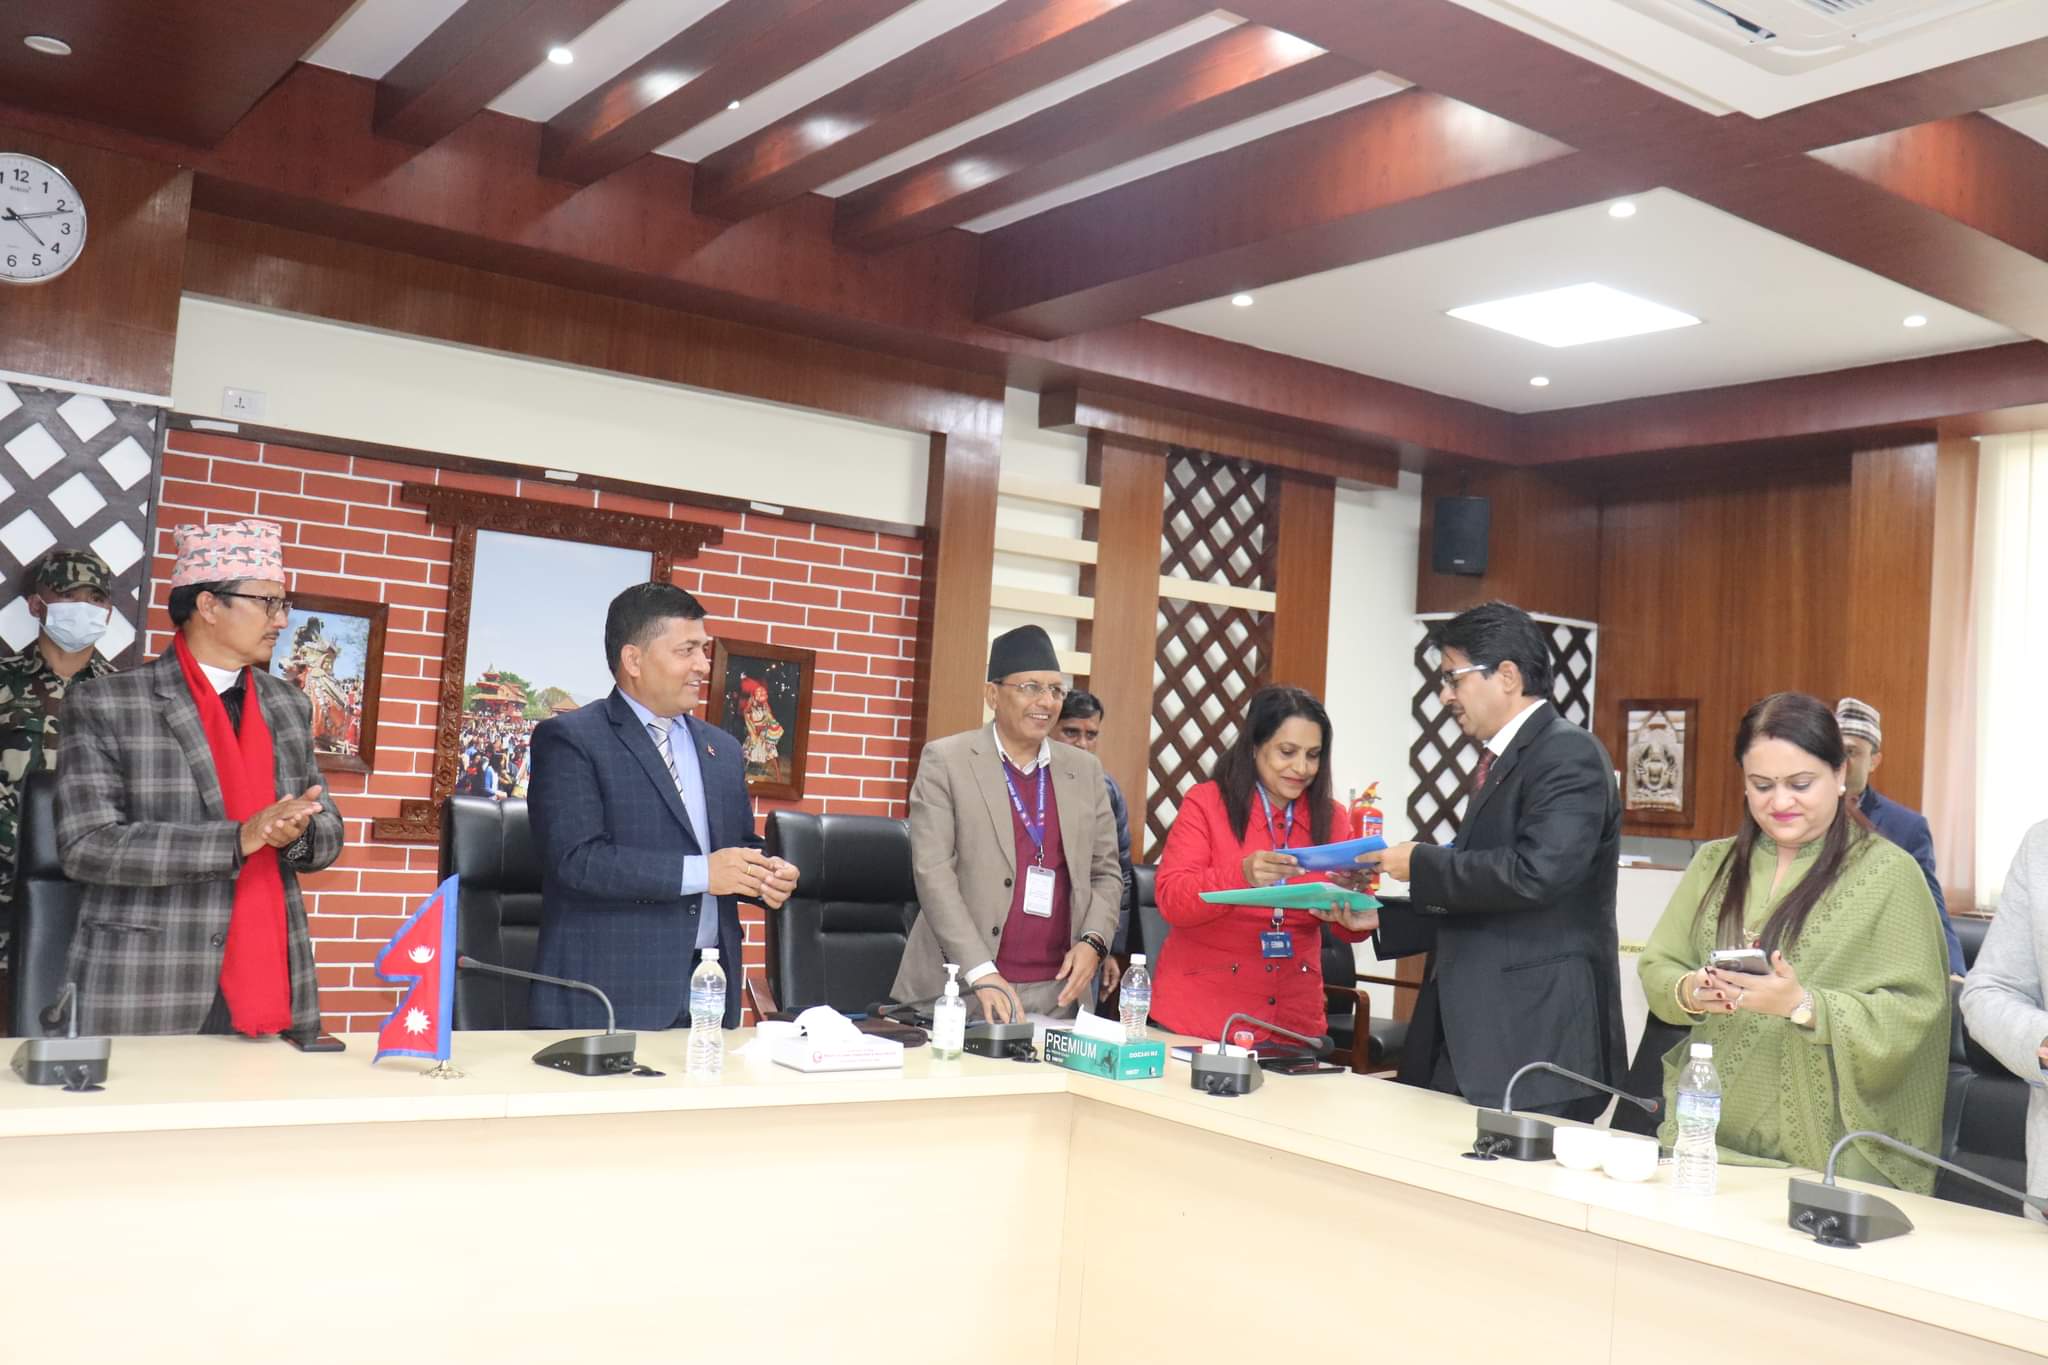 वैदेशिक रोजगार विभाग, बोर्ड र नेपाल व्यवसायी संघ कतारबीच त्रिपक्षीय समझदारी 